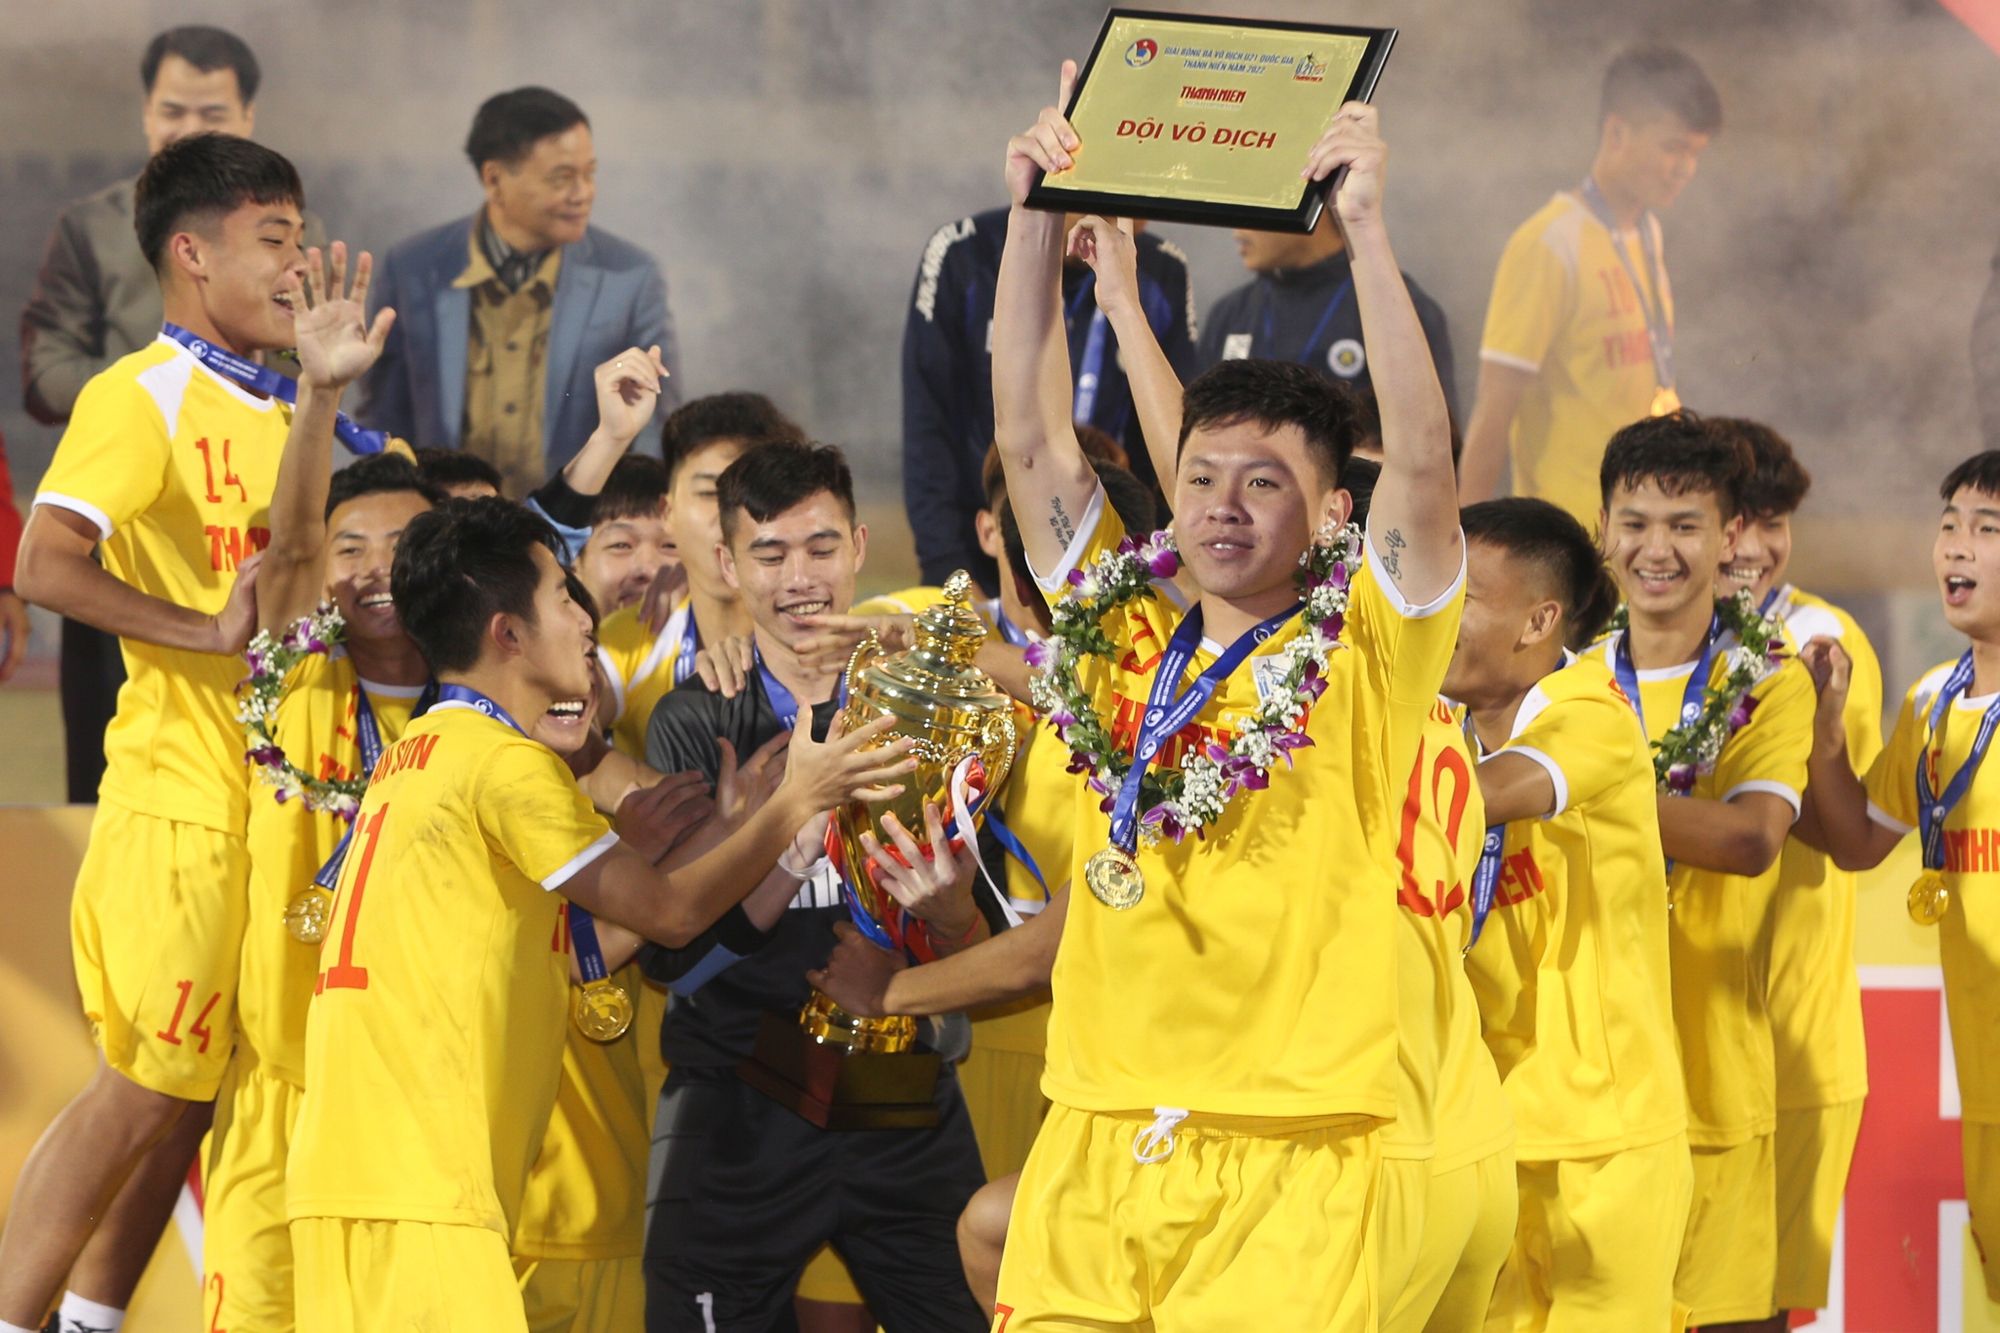 U21 Hà Nội vô địch U21 Quốc gia: Cảm xúc trái ngược giữa U21 Bình Dương và nhà vô địch - Ảnh 12.